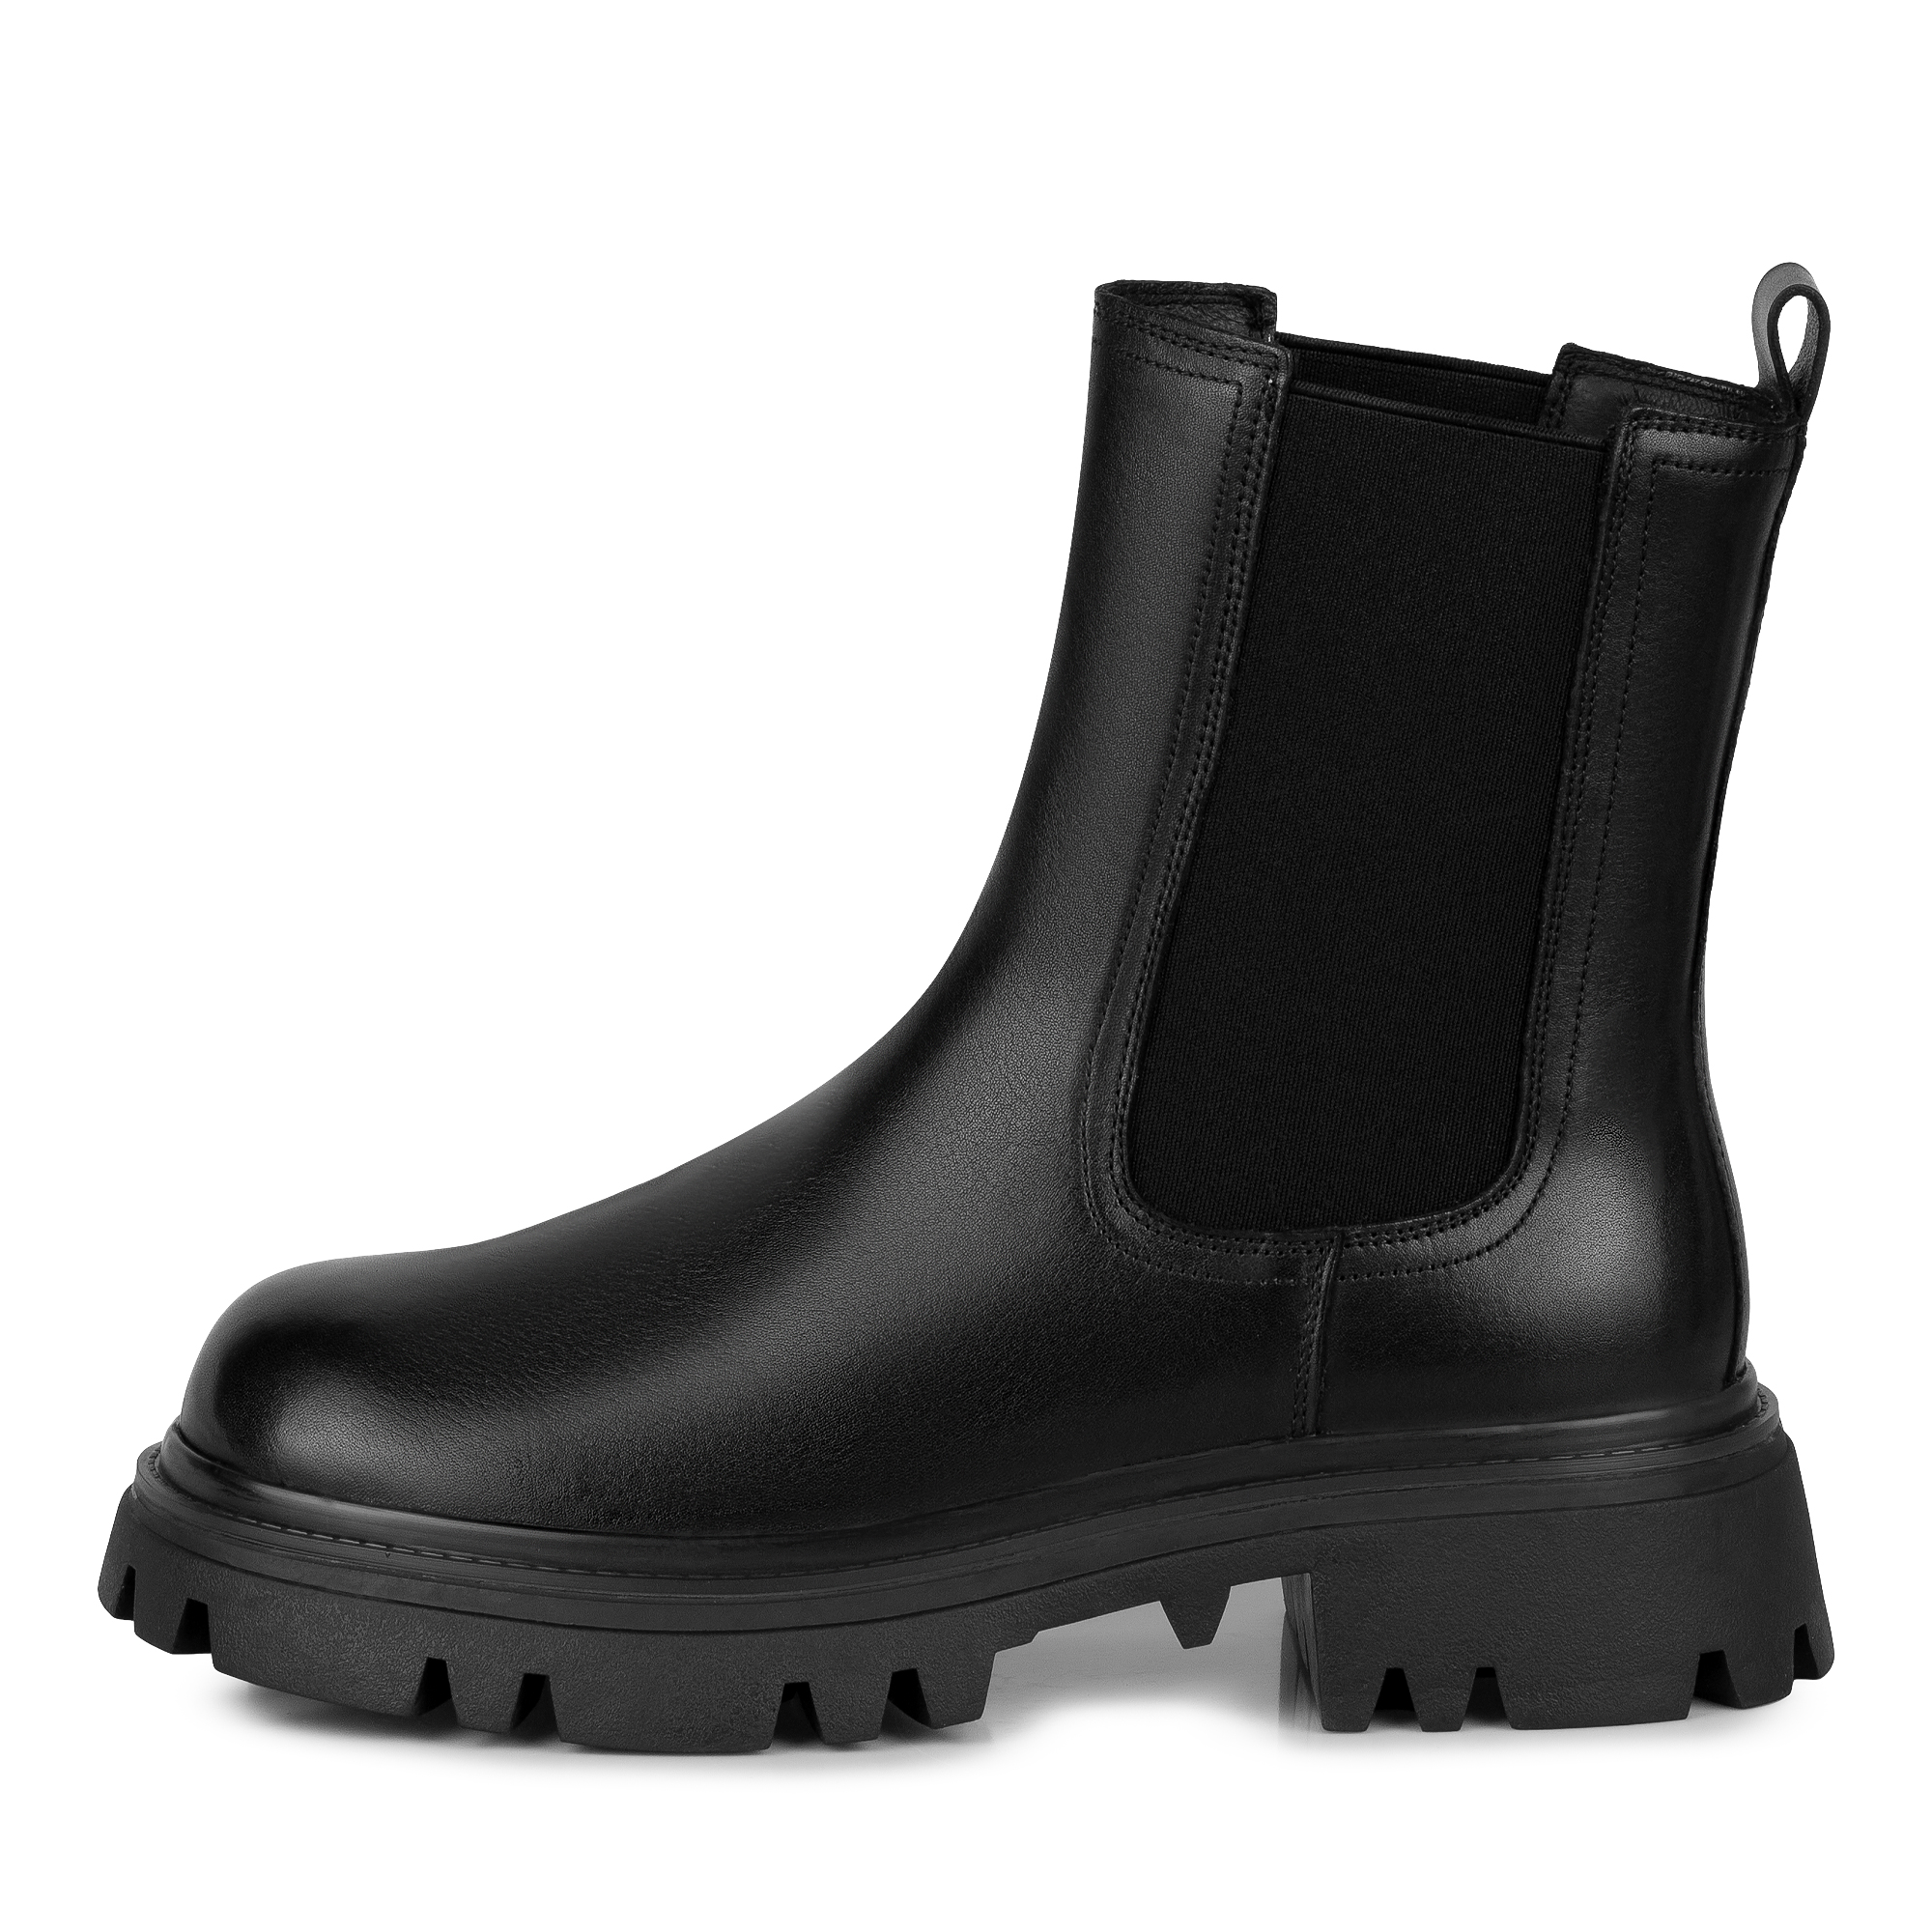 Ботинки Thomas Munz 058-3208C-5102, цвет черный, размер 38